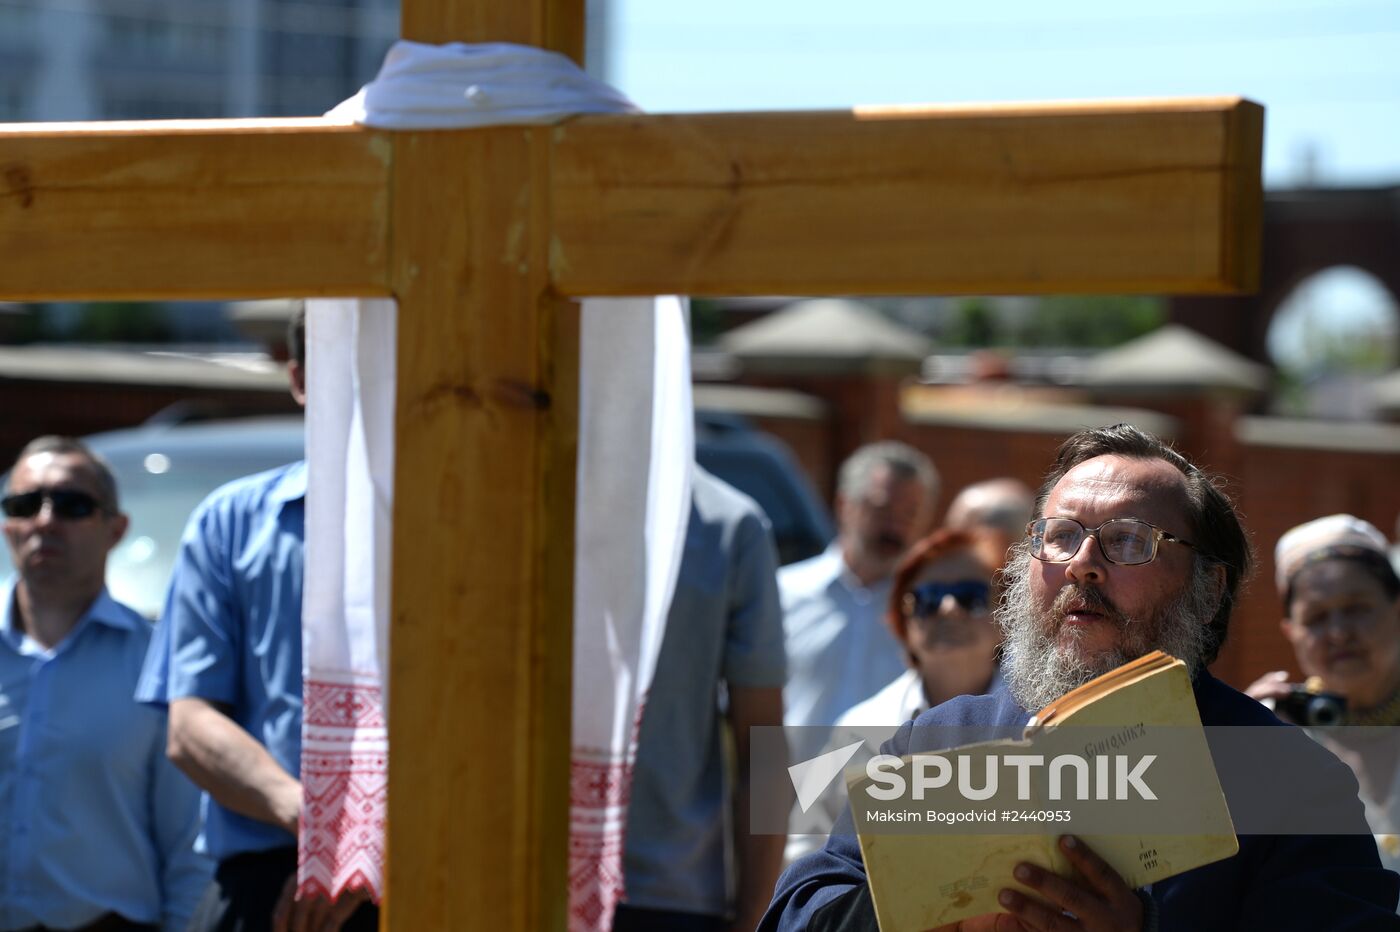 Memorial cross erected in memory of Ukraine victims